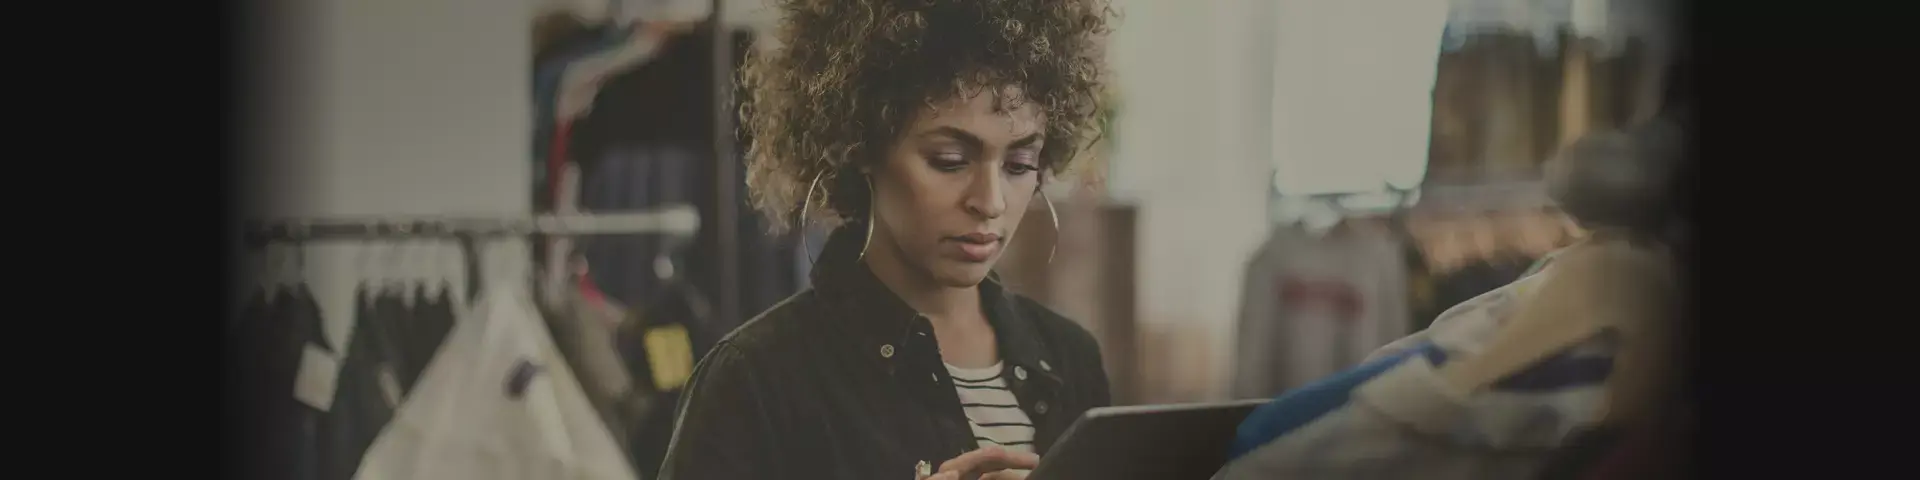 Na foto, uma mulher está dentro de uma loja enquanto parece consultar alguma informação em um tablet.